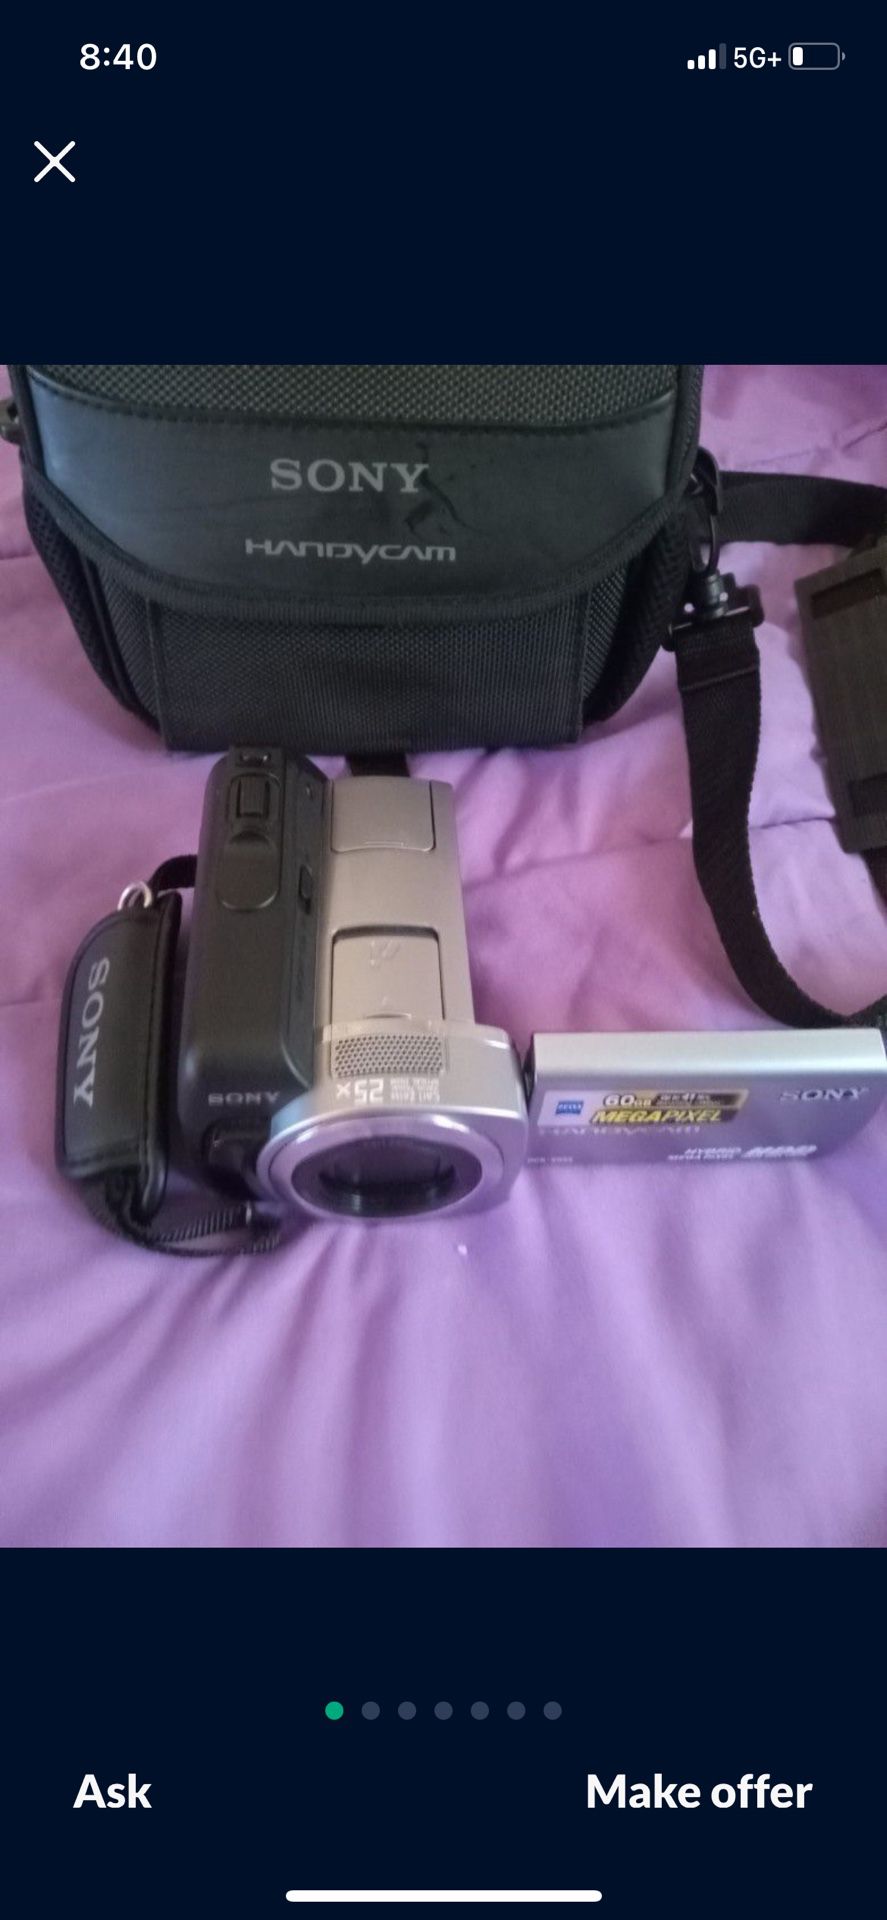 Sony Camera With Camera Bag